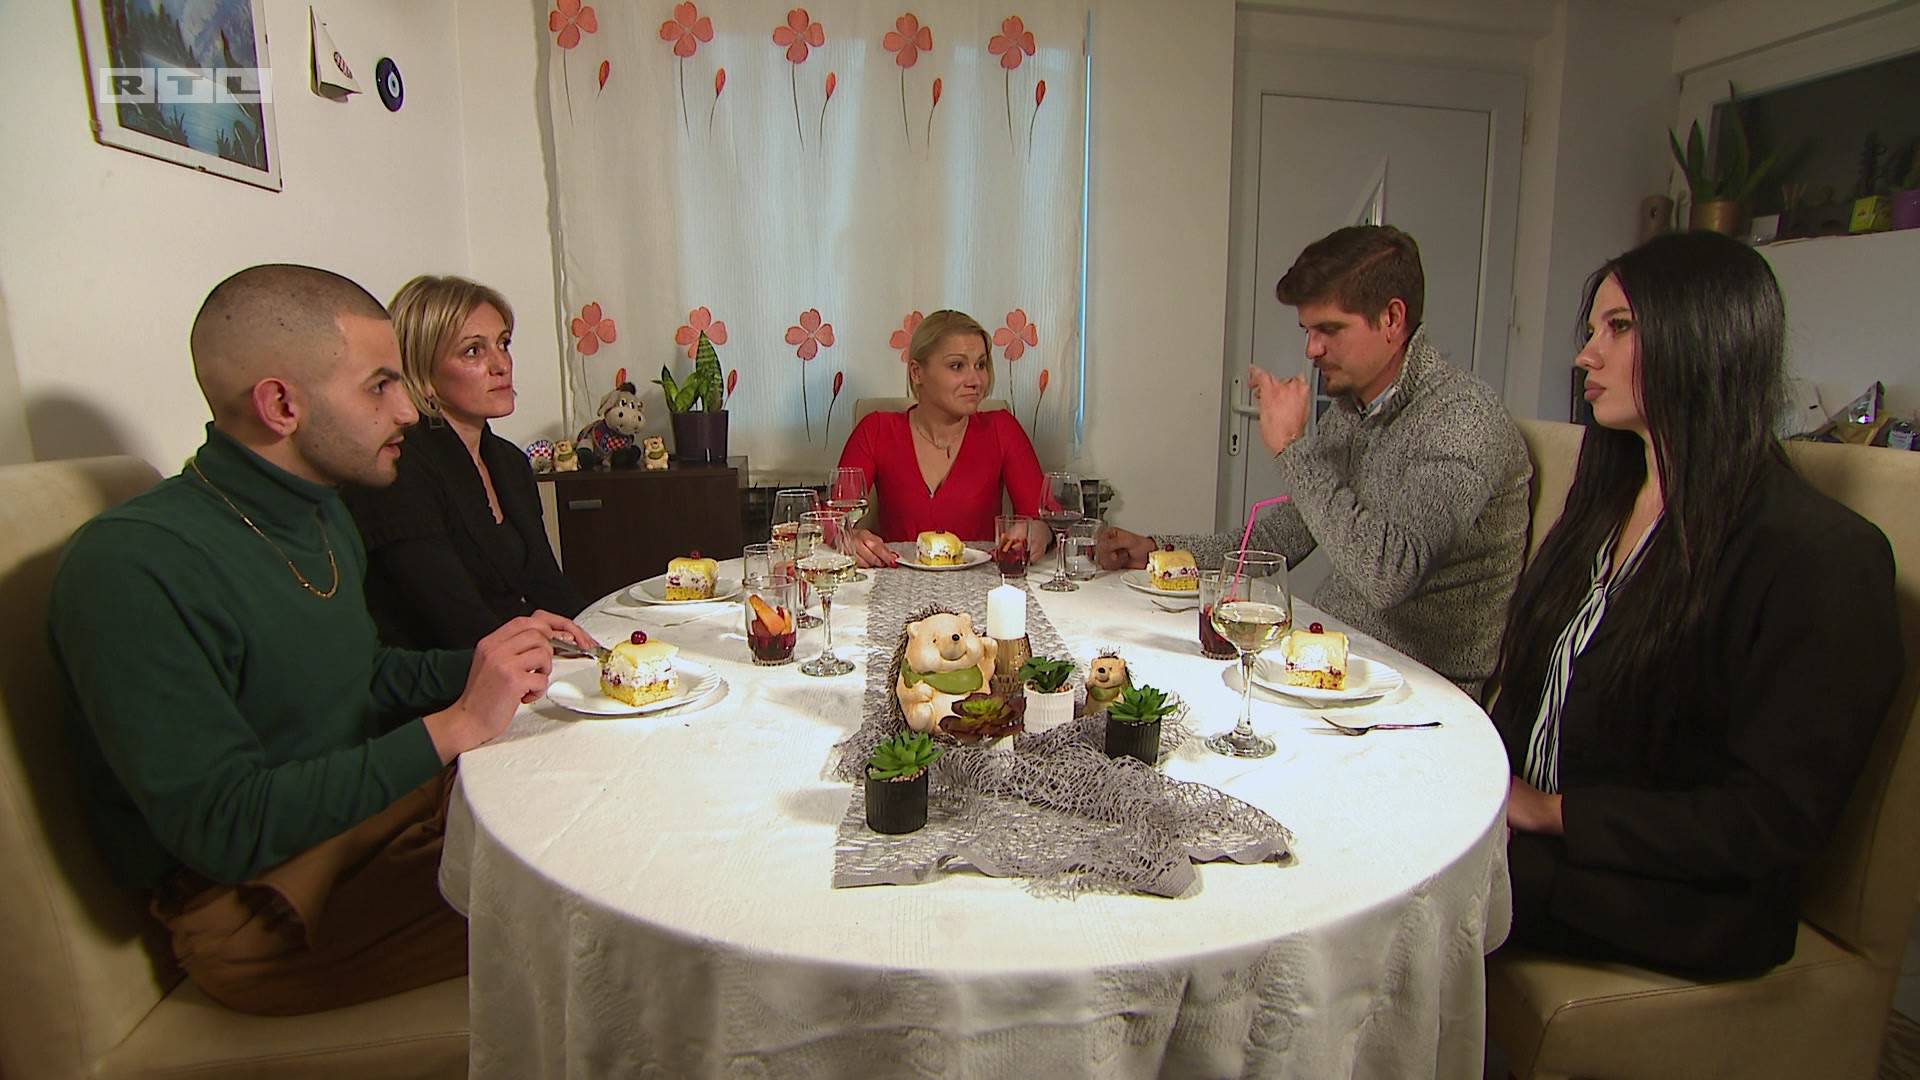 Valentina tužna zbog večere, a gosti su razočarani: 'Preljuto, spržio sam želudac. Nejestivo'